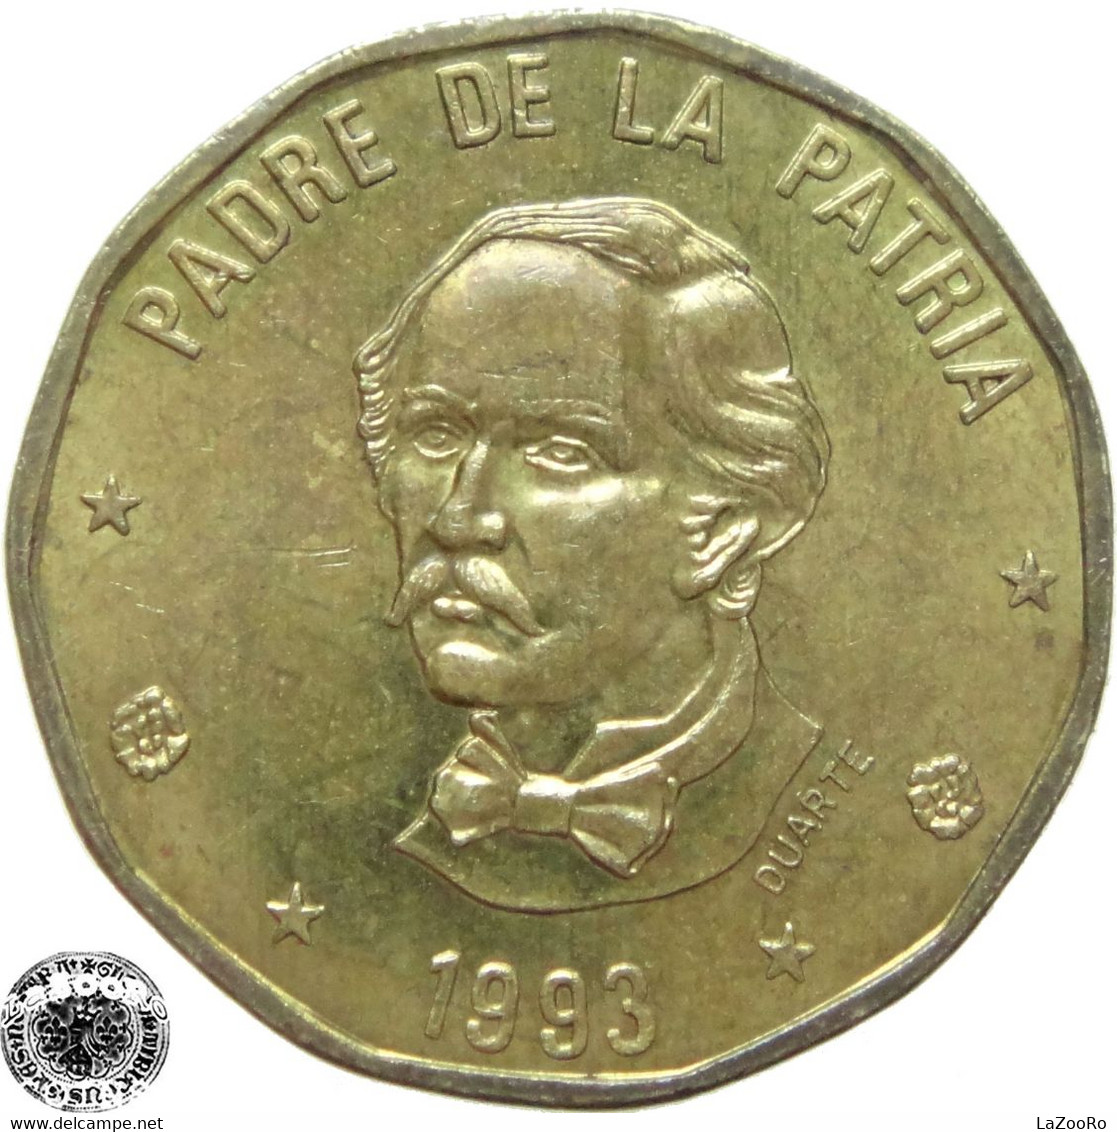 LaZooRo: Dominican Republic 1 Peso 1993 XF / UNC - Dominicana